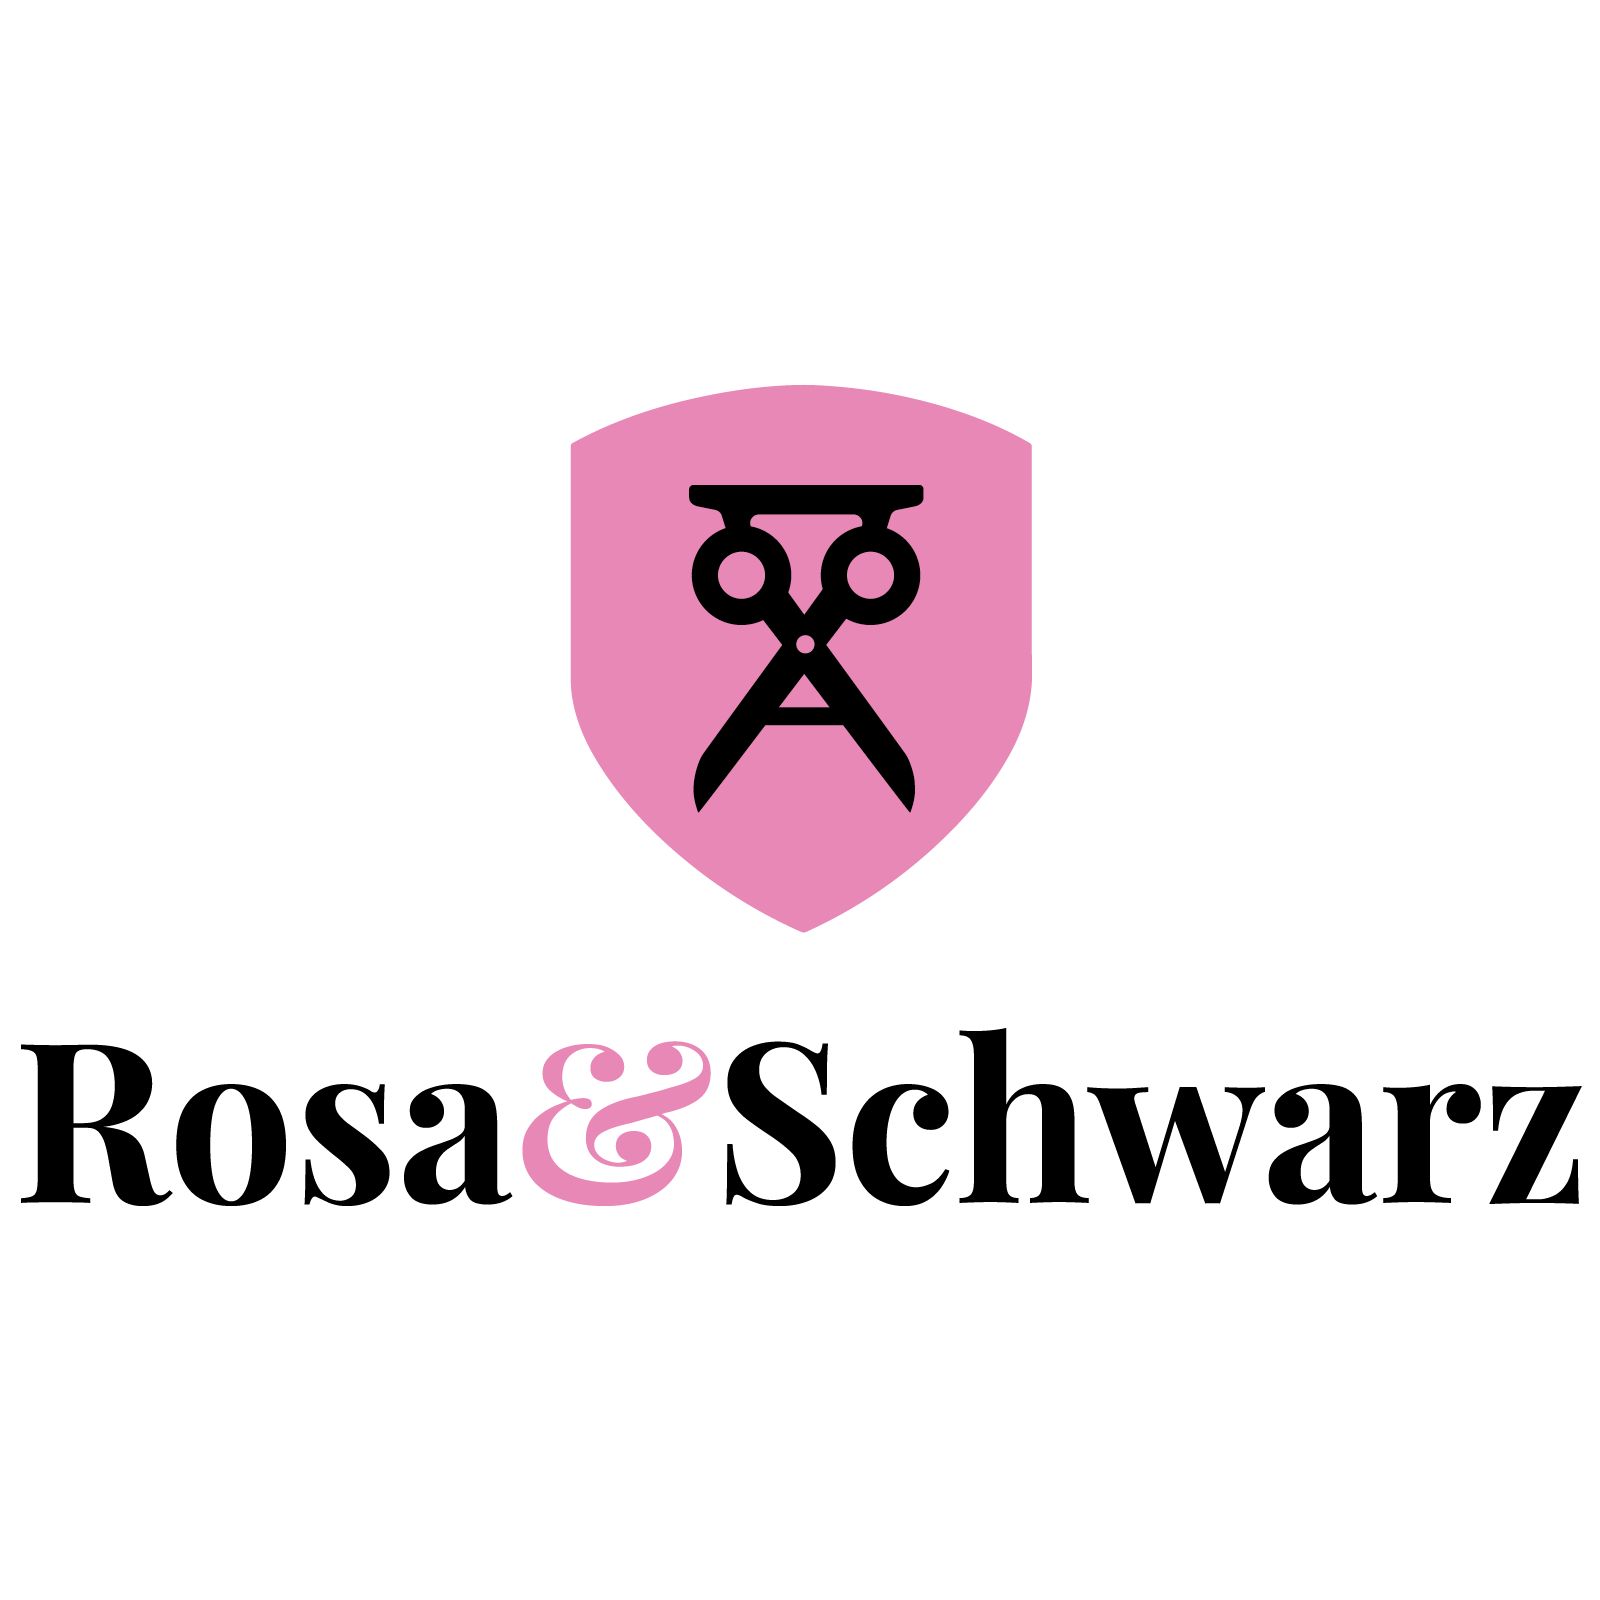 Rosa & Schwarz Logo